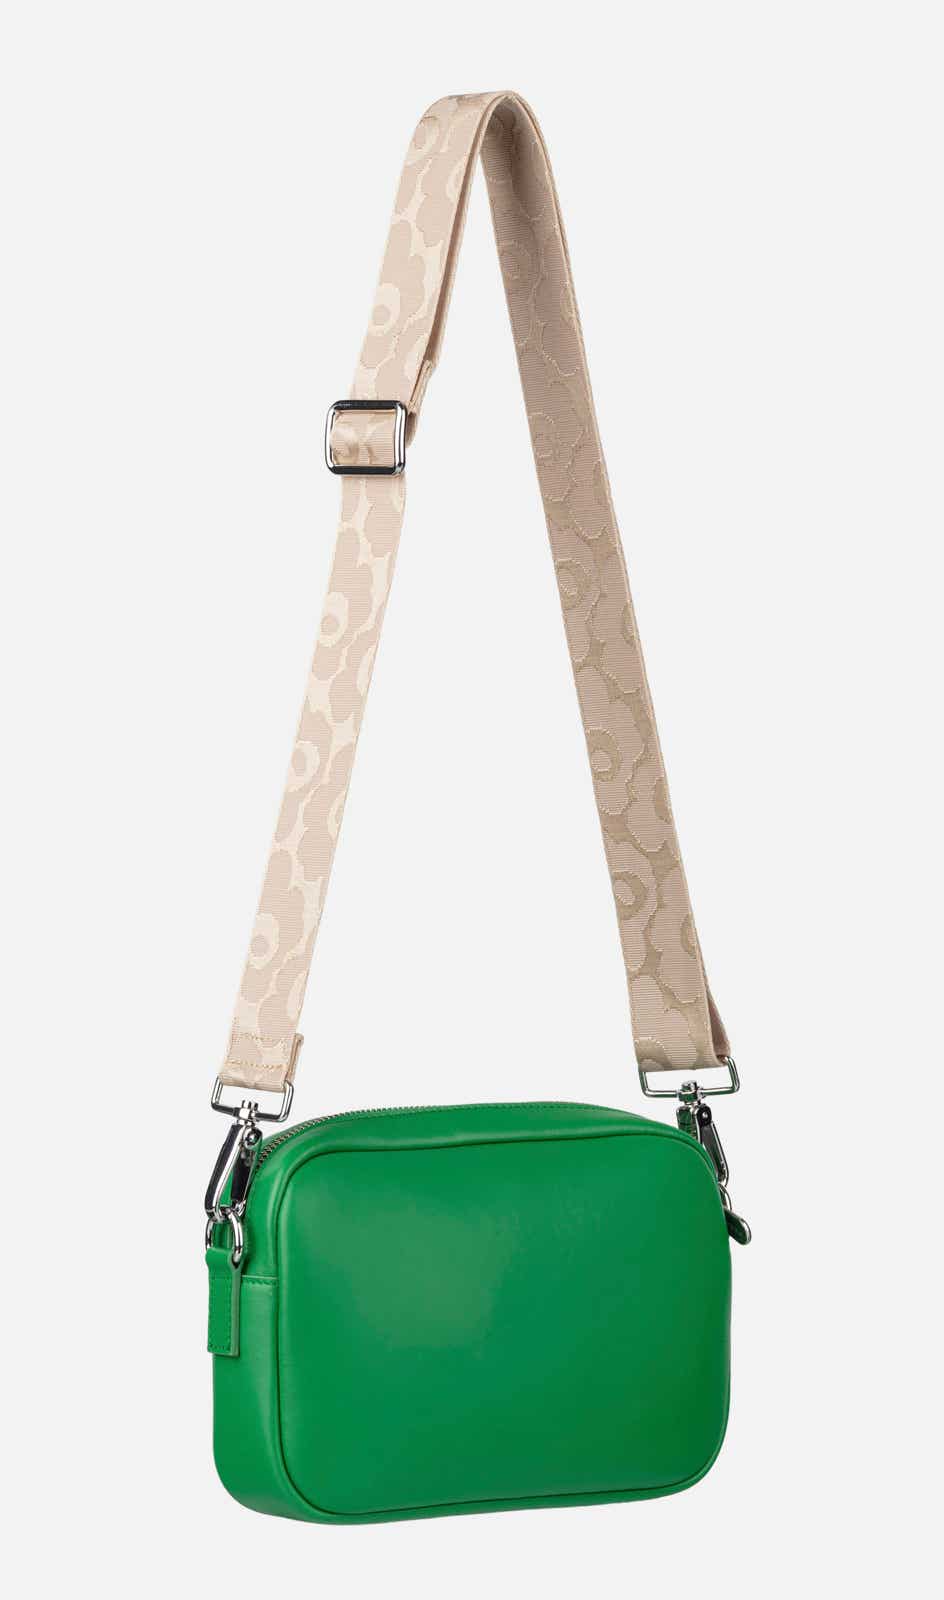 Soft Gratha shoulder bag – 15 x 22 x 5 cm – soft full grain leather